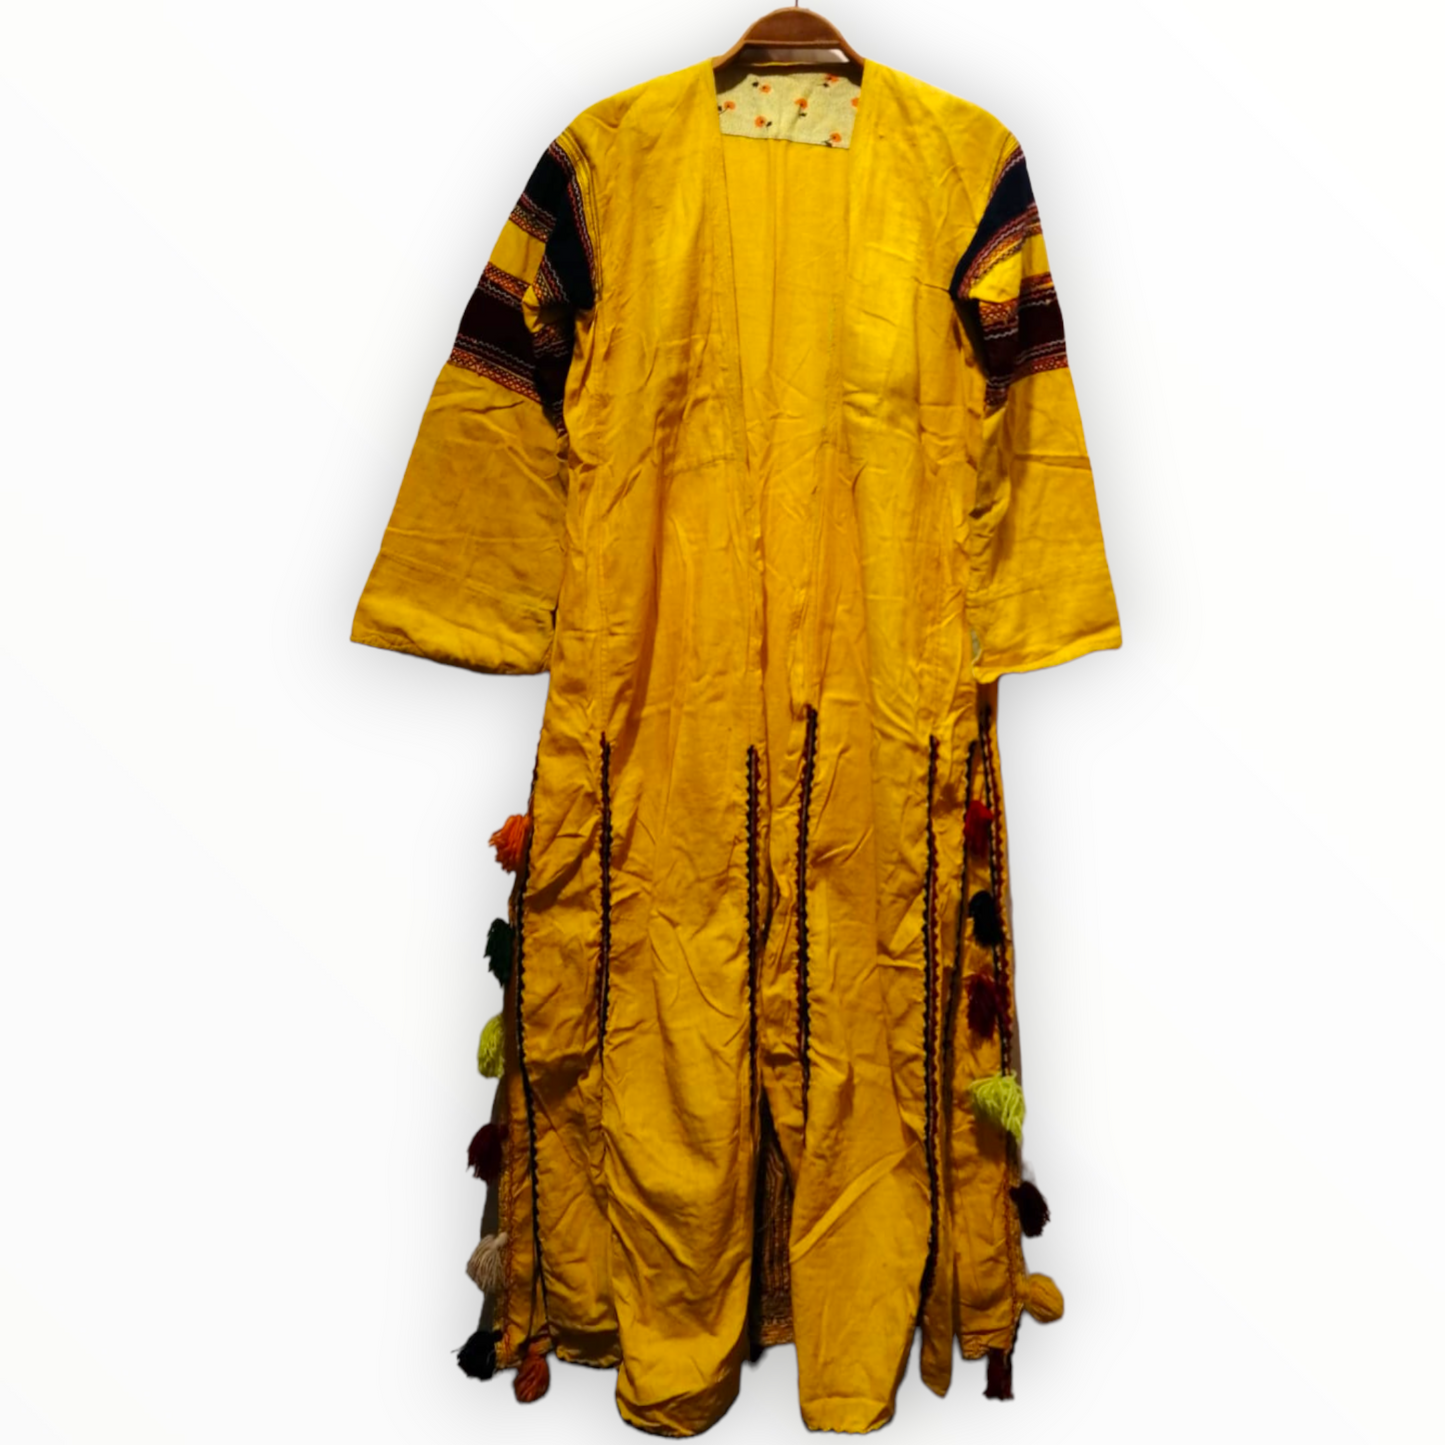 Antique Alevi Turkmen Dress